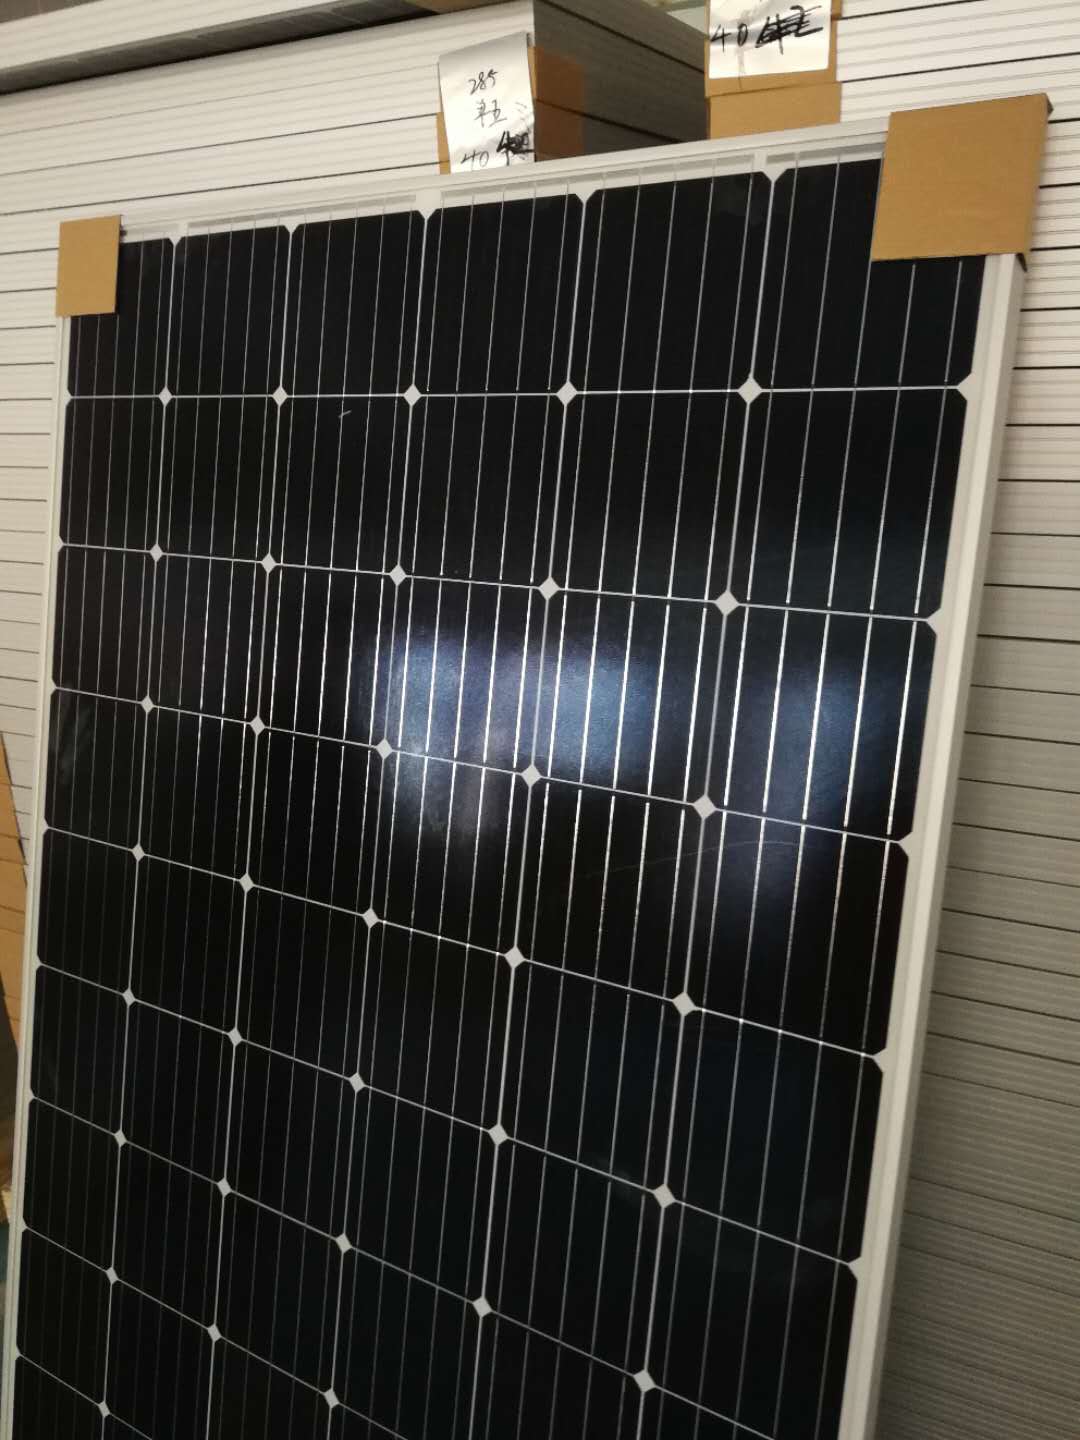 江苏太阳能电池板厂家 长期供应A+级太阳能板